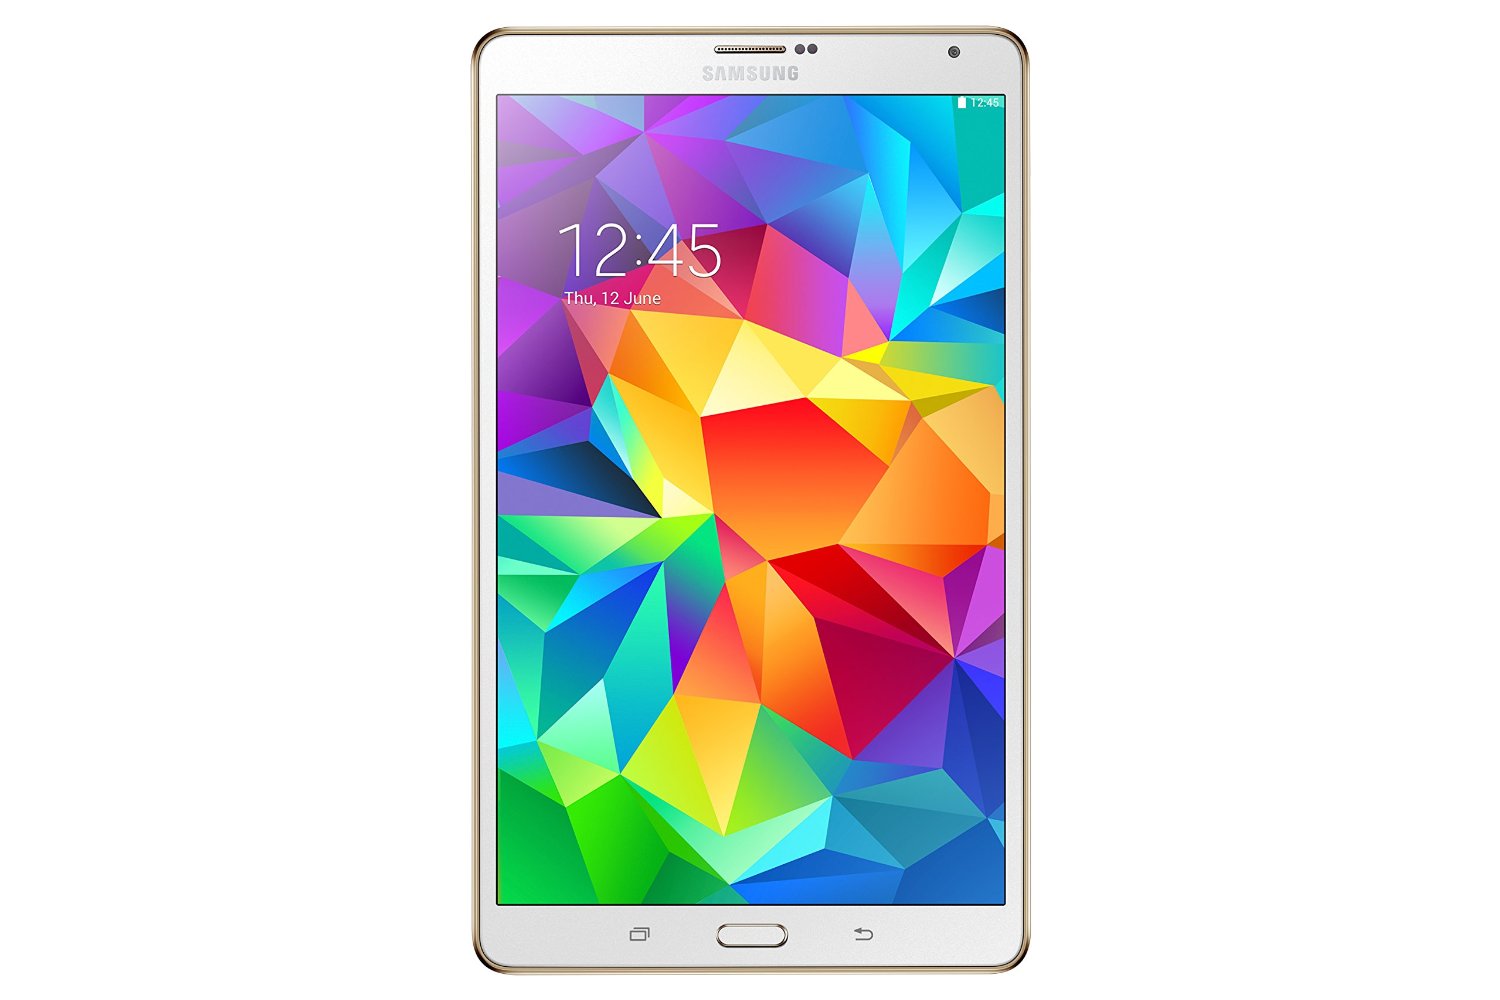 Samsung Galaxy Tab S 8.4 LTE Tablet-PC (Quad-Core, 1,9GHz, 3GB RAM, 16GB) weiß bei Amazon Itailen für nur 298,38 Euro inkl. Versand